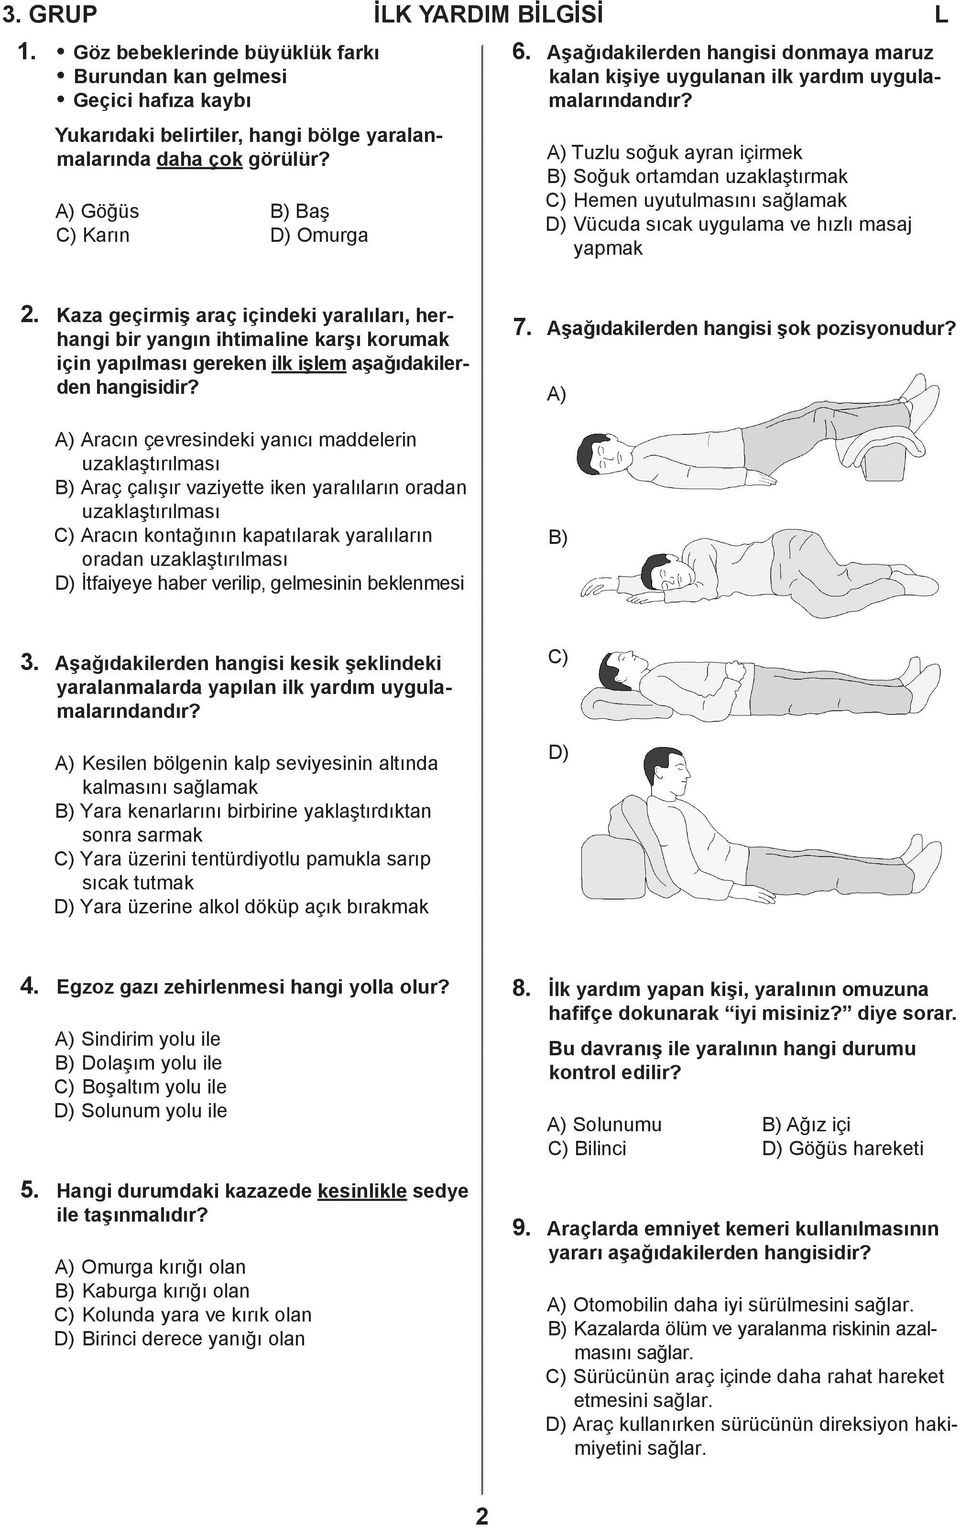 A) Tuzlu soğuk ayran içirmek B) Soğuk ortamdan uzaklaştırmak C) Hemen uyutulmasını sağlamak D) Vücuda sıcak uygulama ve hızlı masaj yapmak 2.